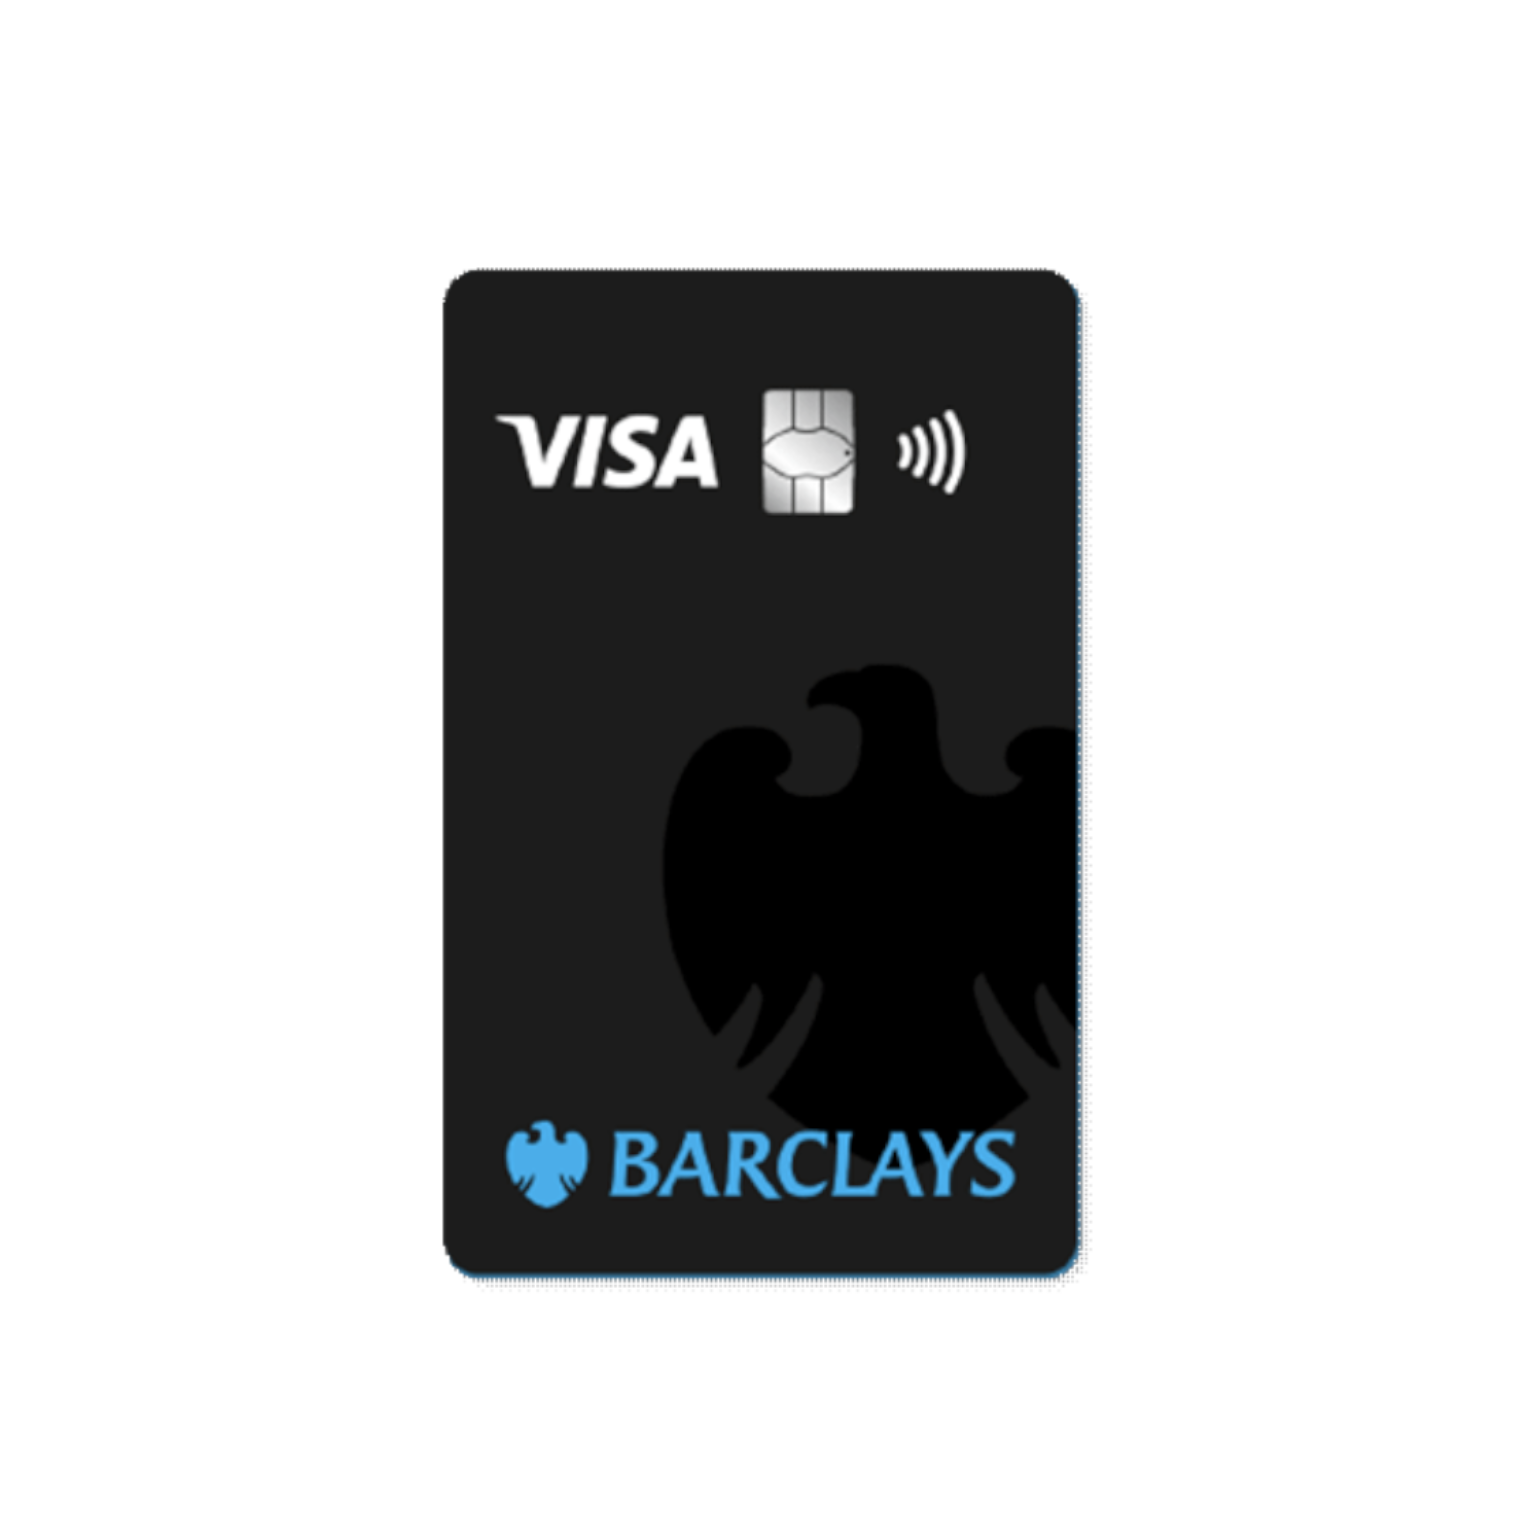 Kostenlose Revolving Kreditkarte von der Barclays Bank